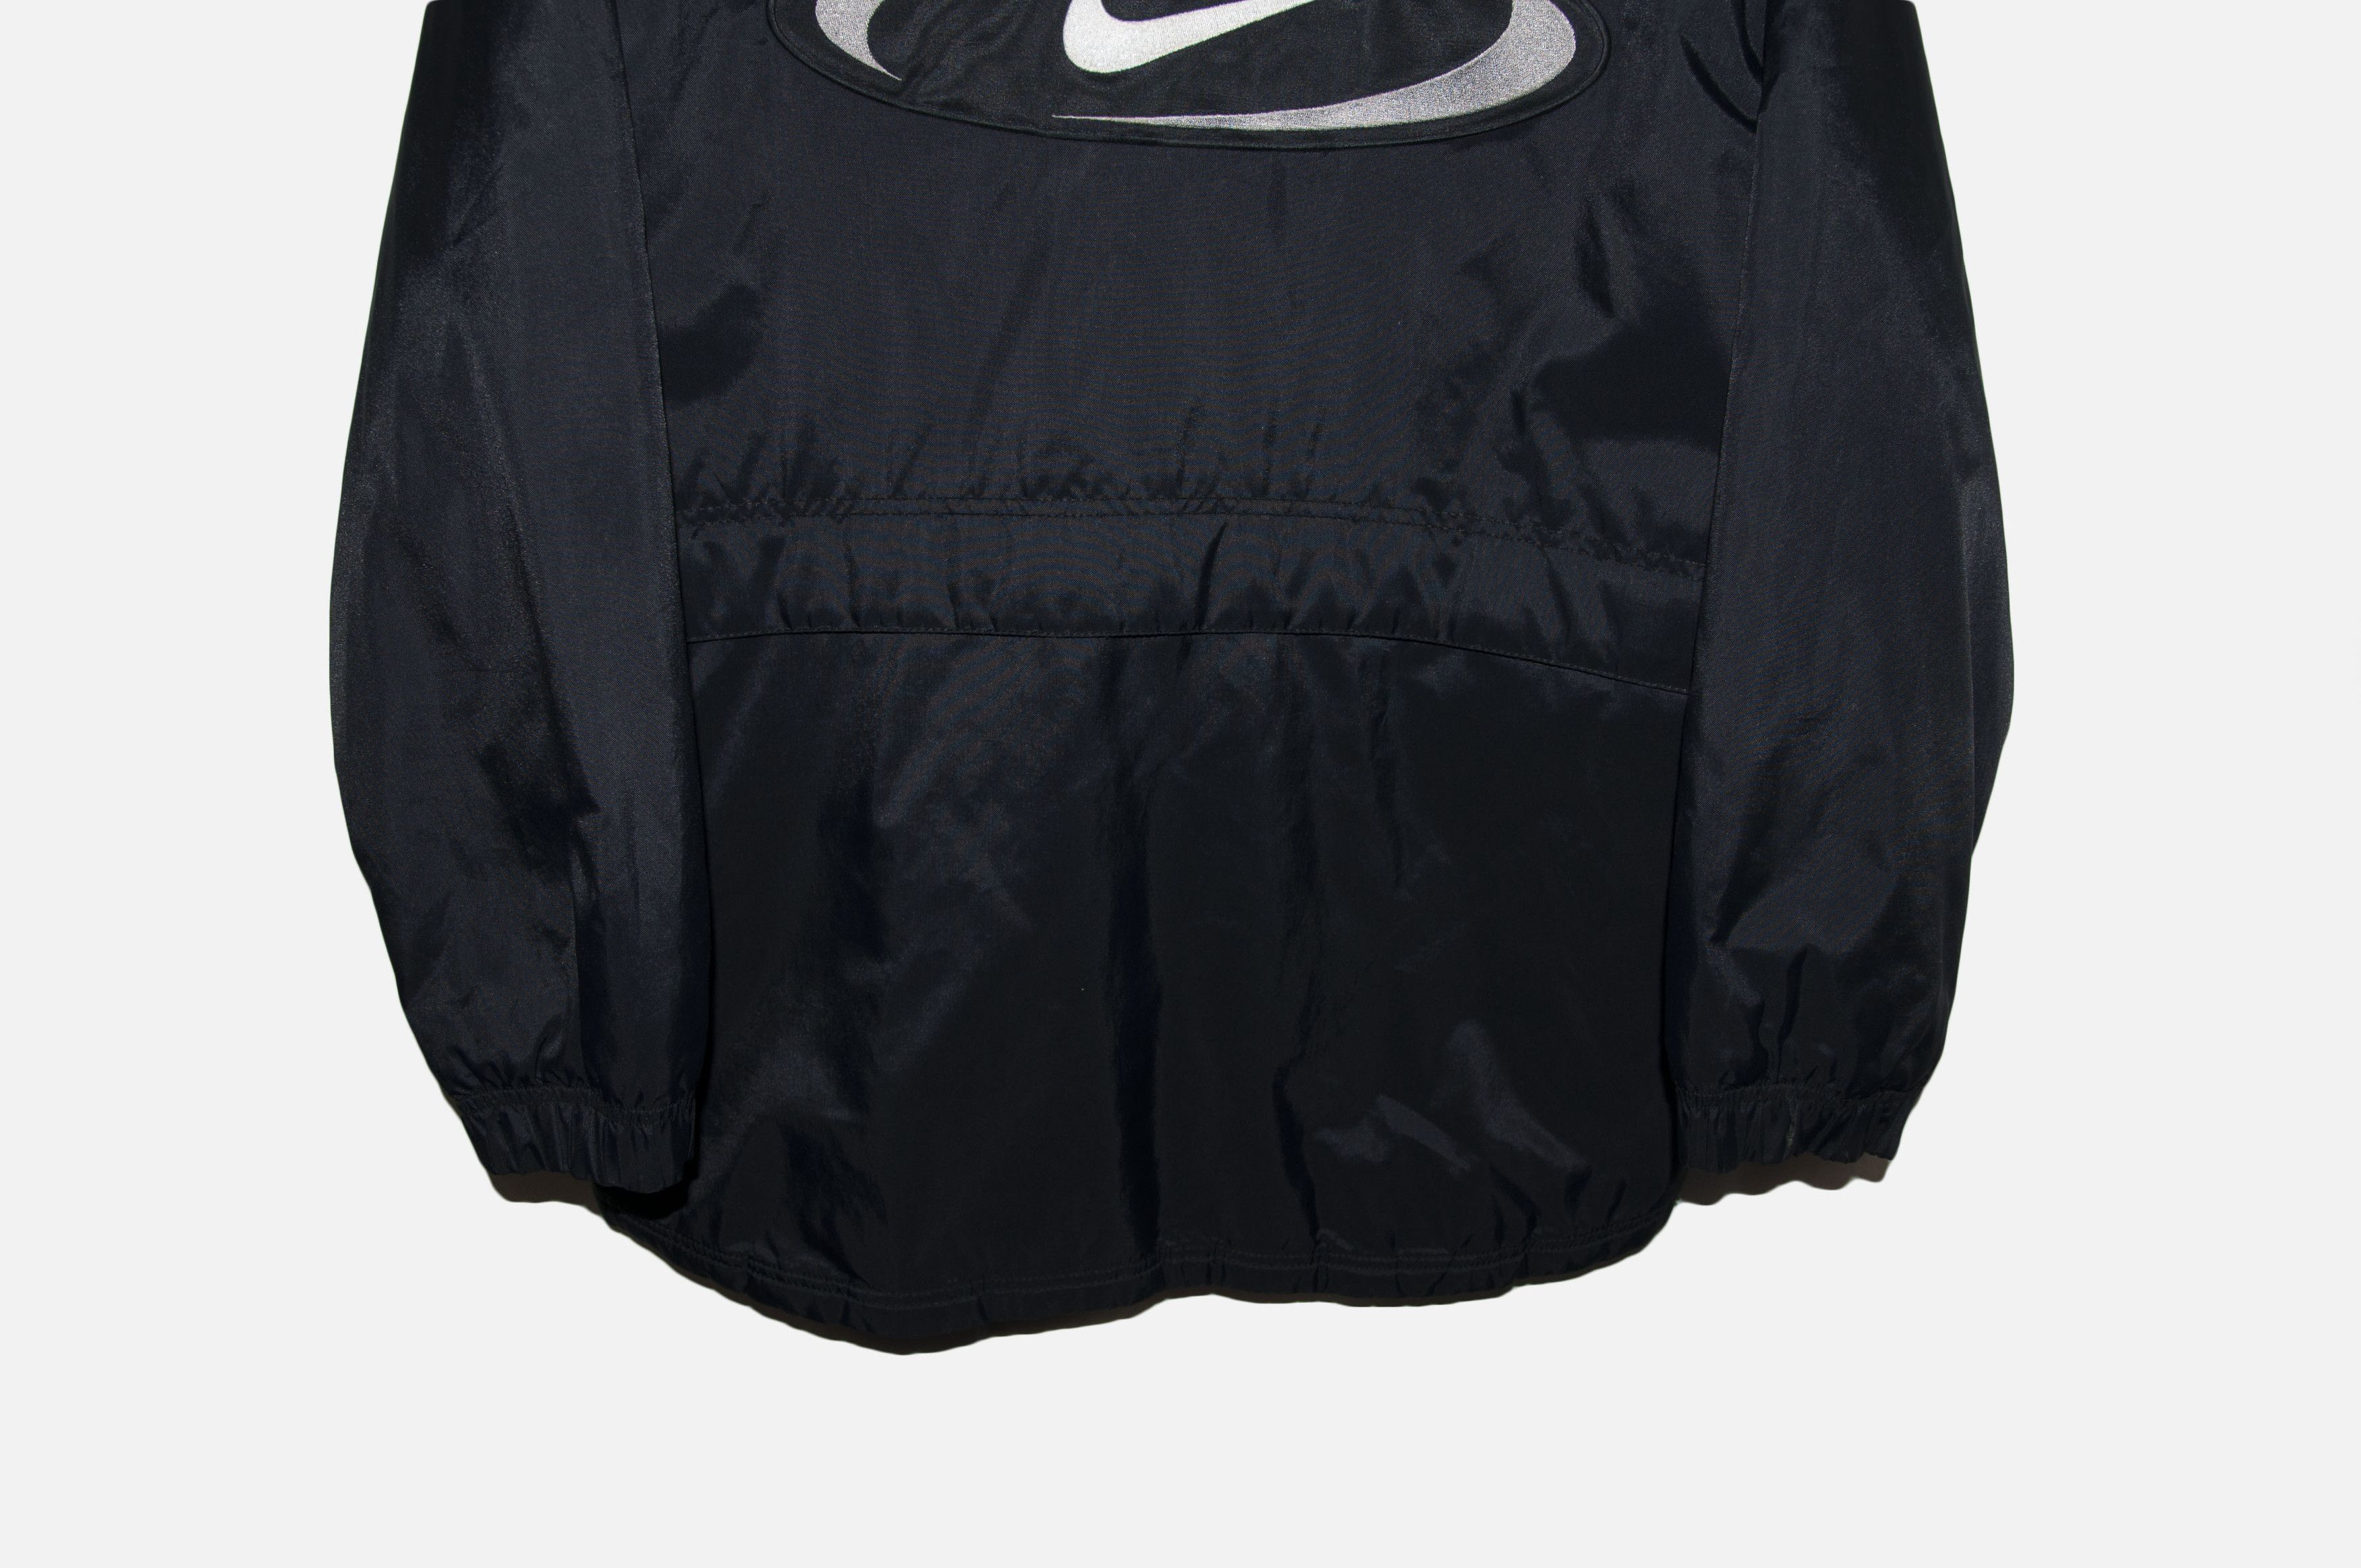 Nike vintage Nike mens Nylon Track Jacket Black White Retro 90s Size US S / EU 44-46 / 1 - 3 Thumbnail